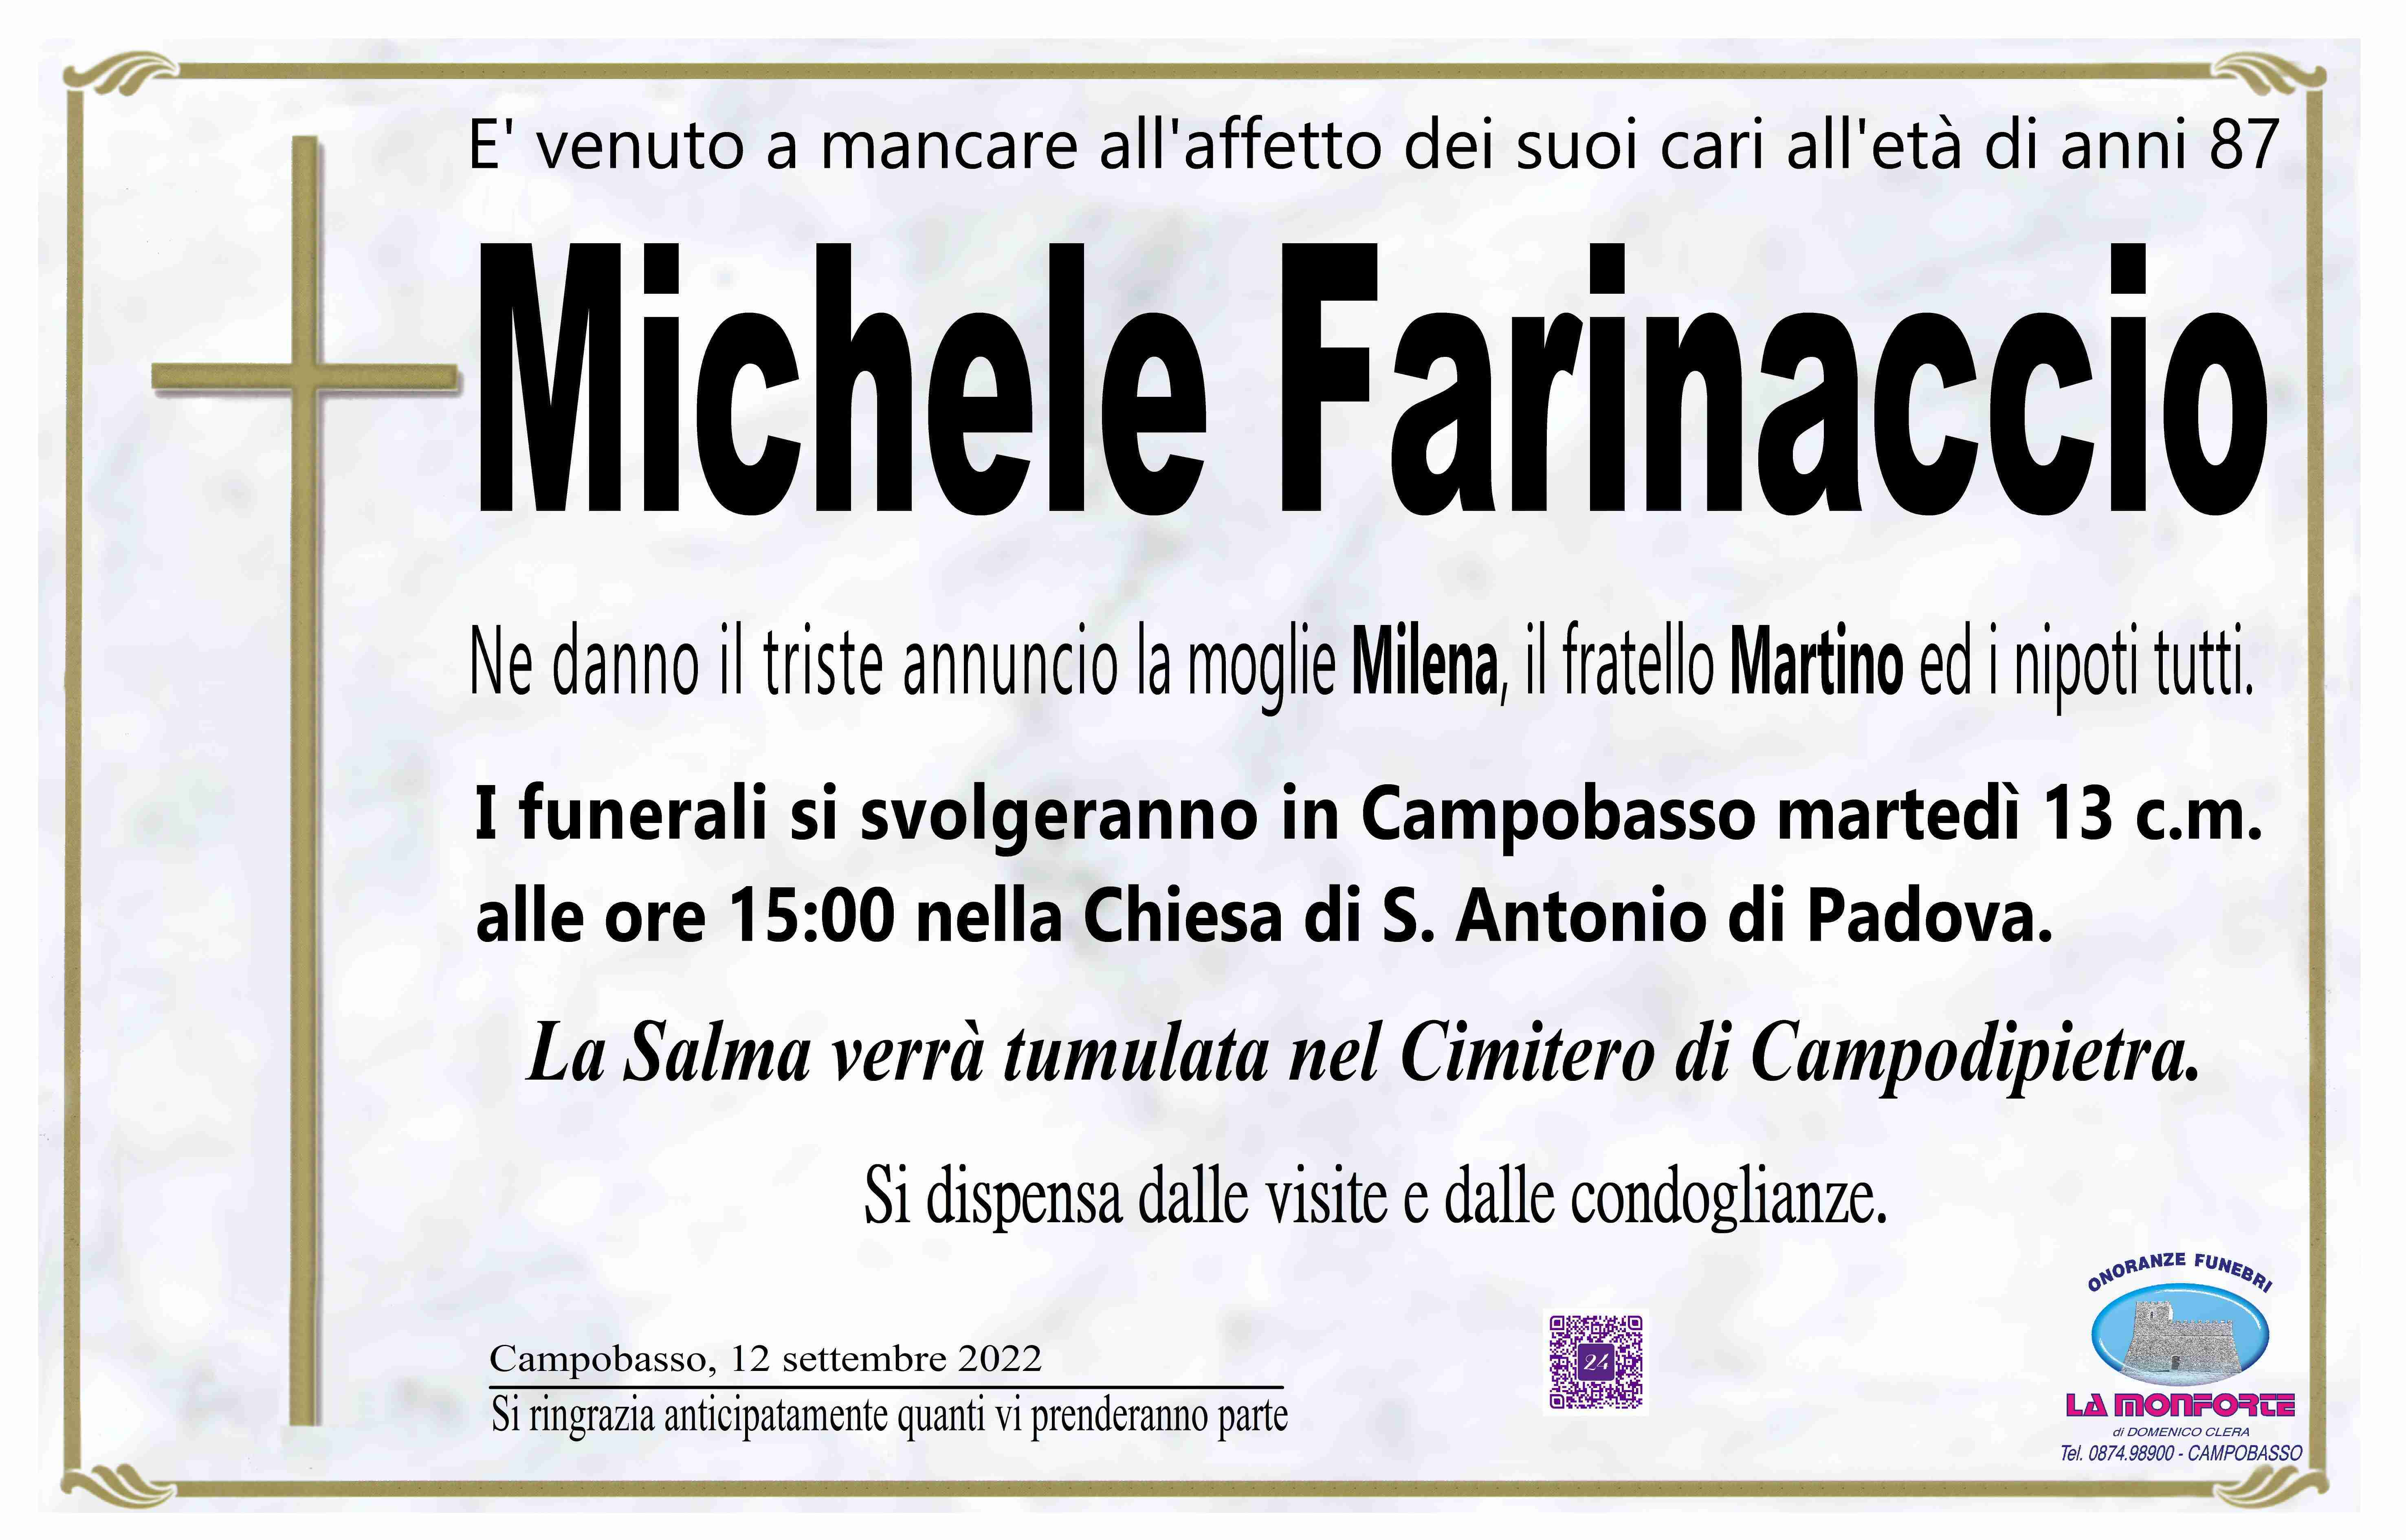 Michele Farinaccio